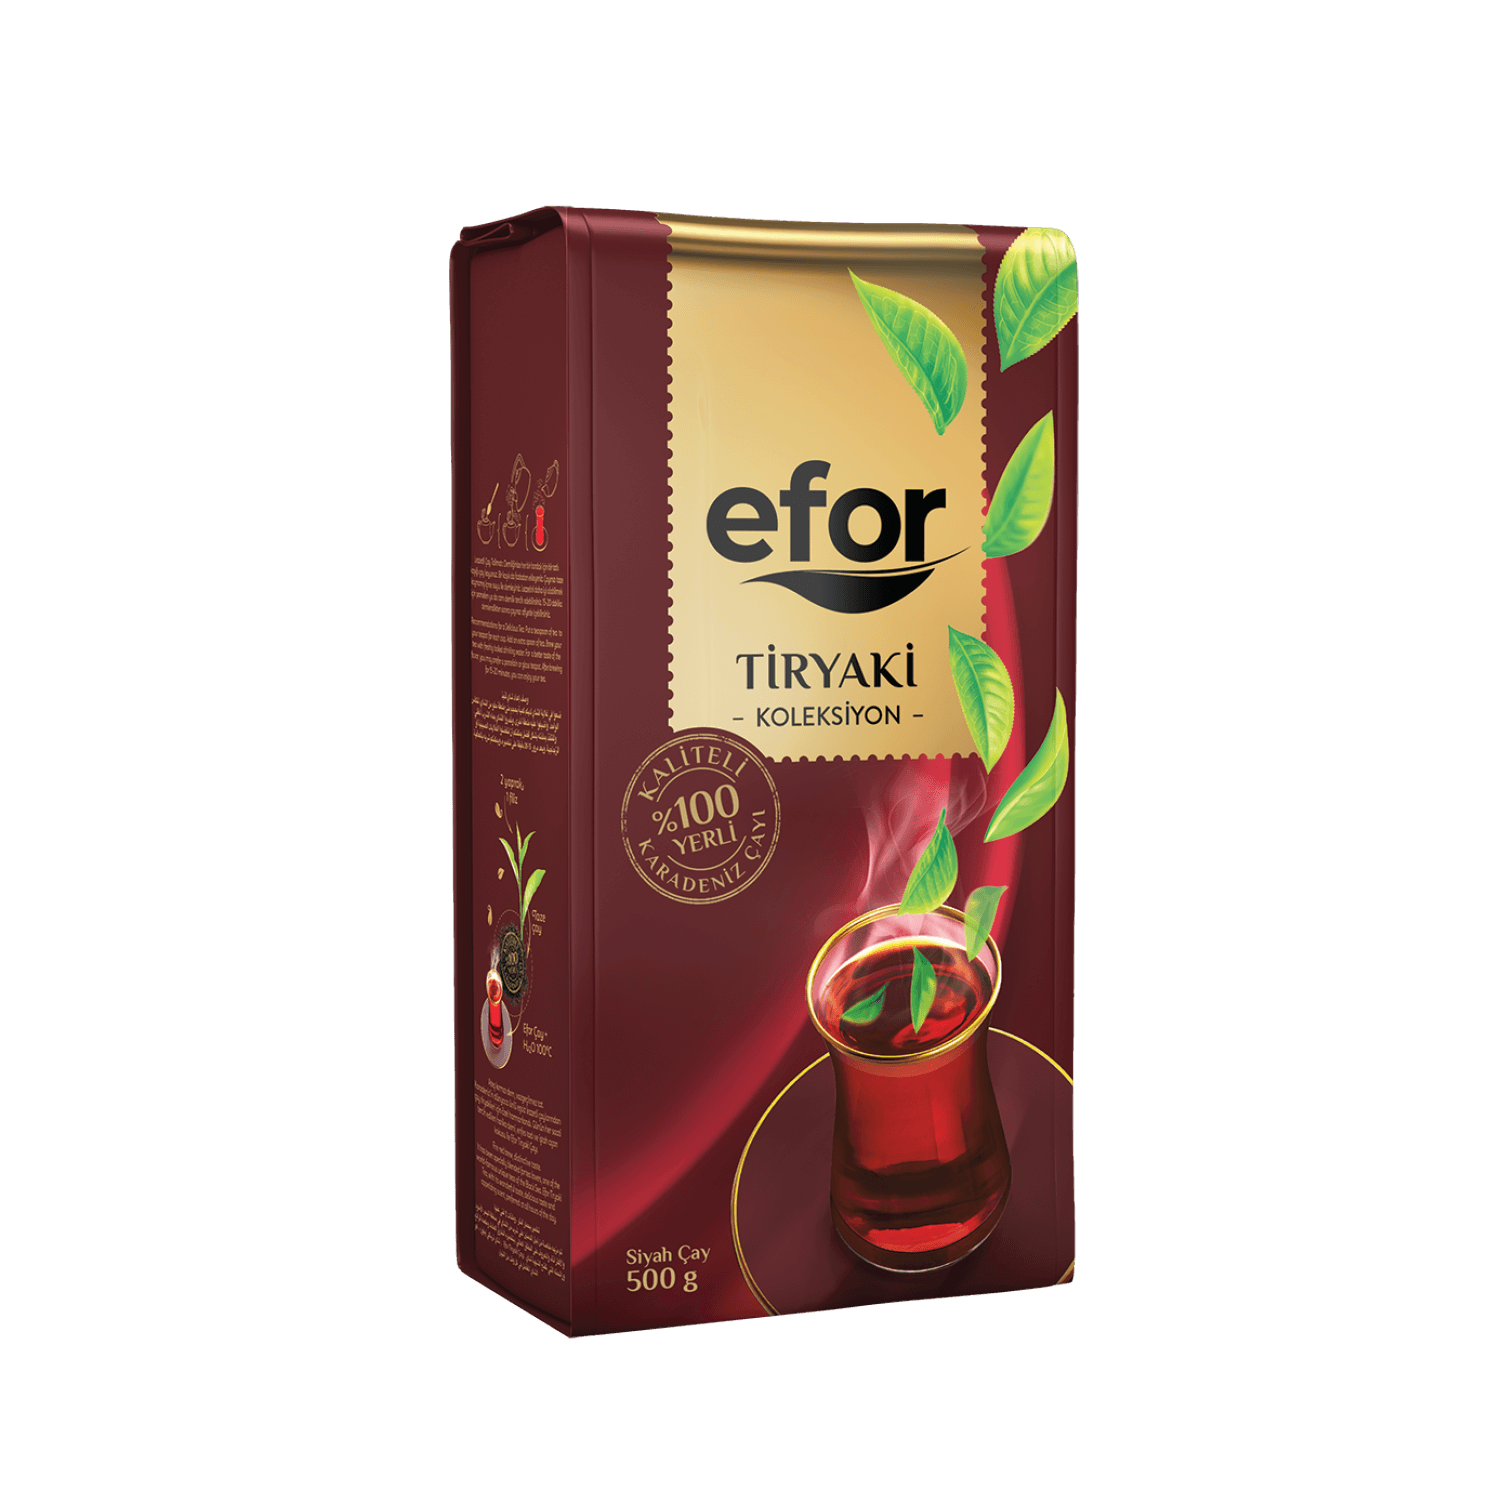 Efor Tiryaki Collection Tea 500g